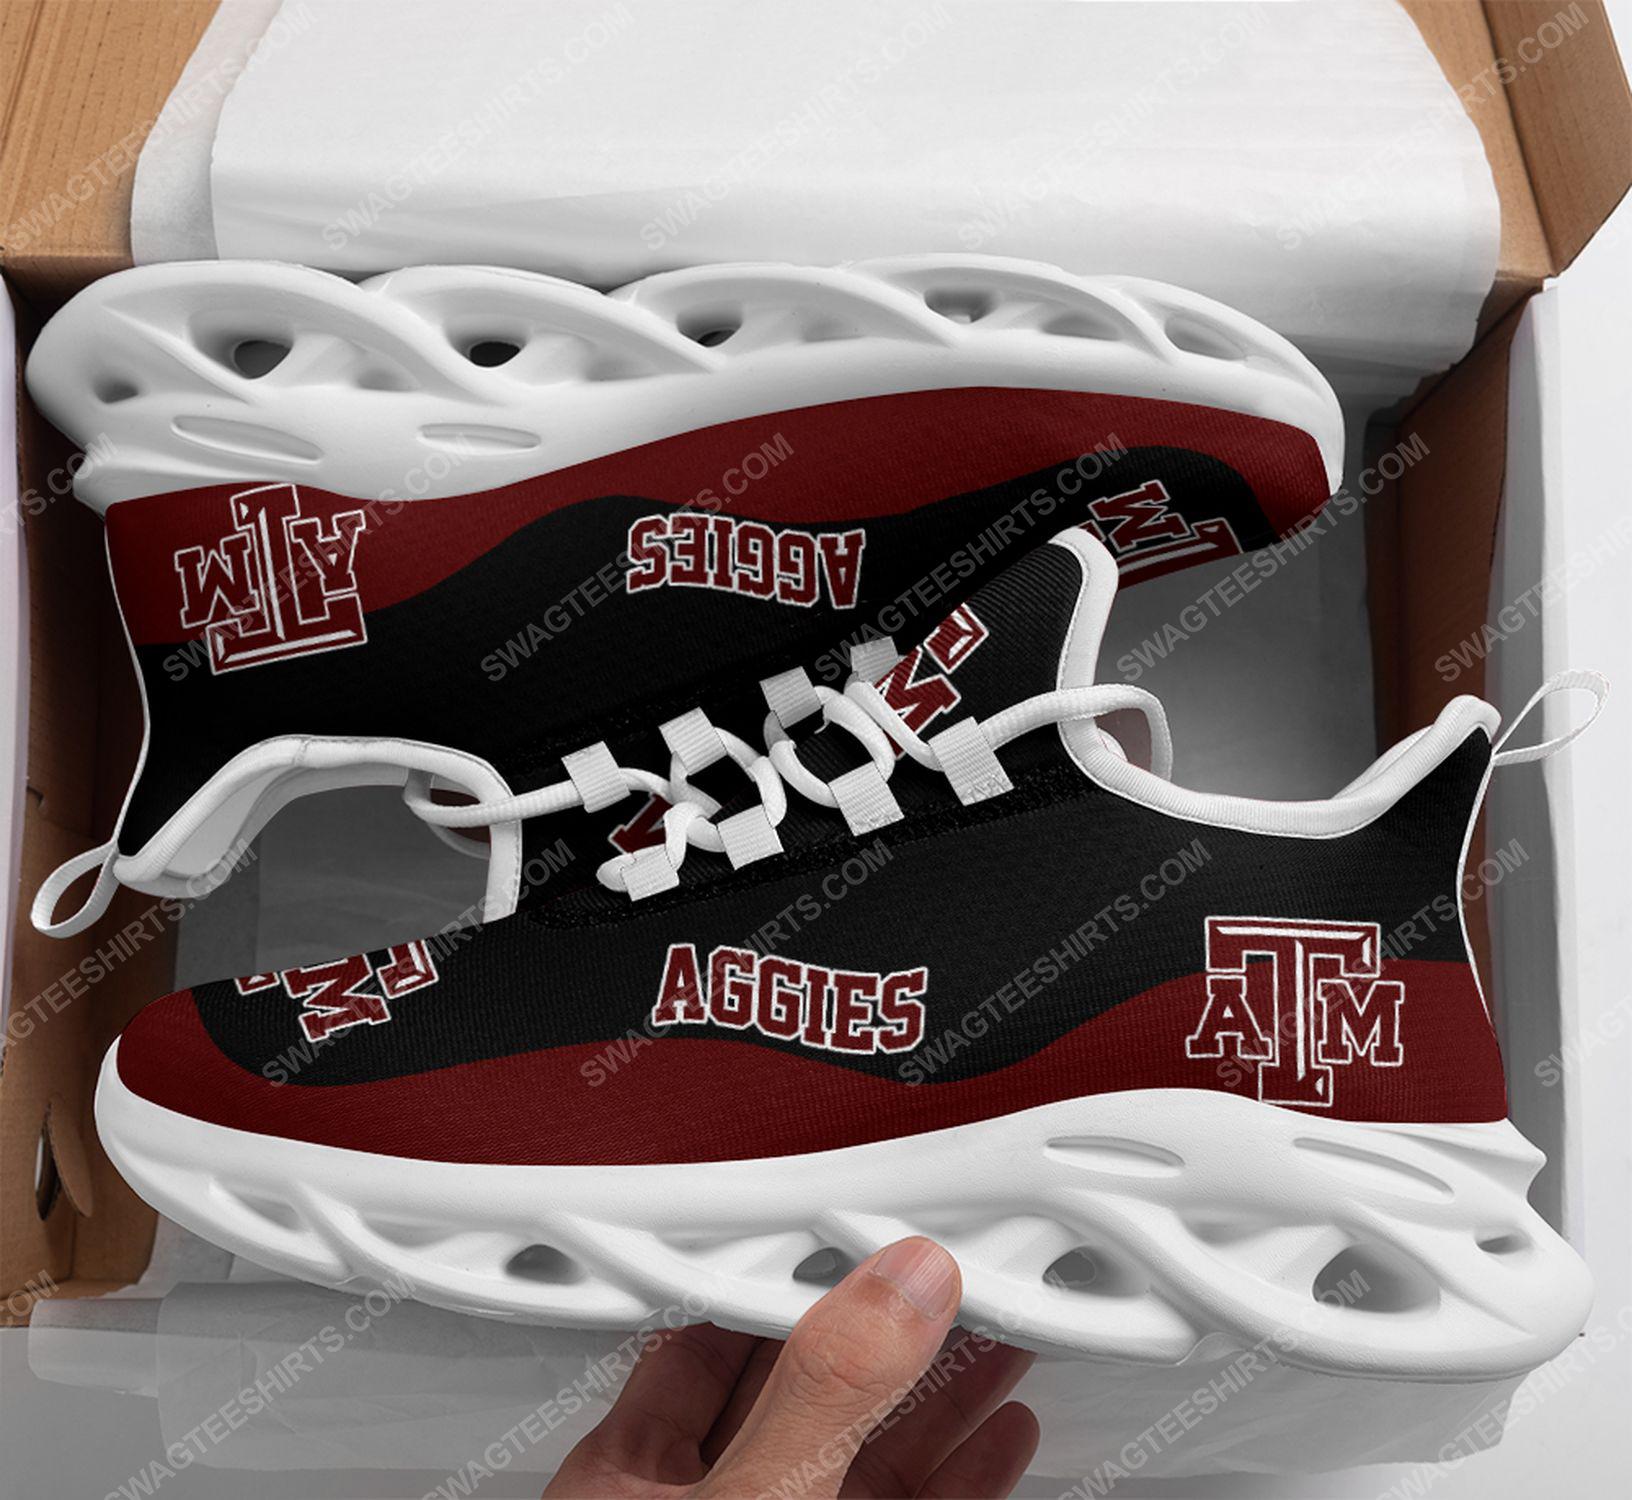 The texas a&m aggies football team max soul shoes 1